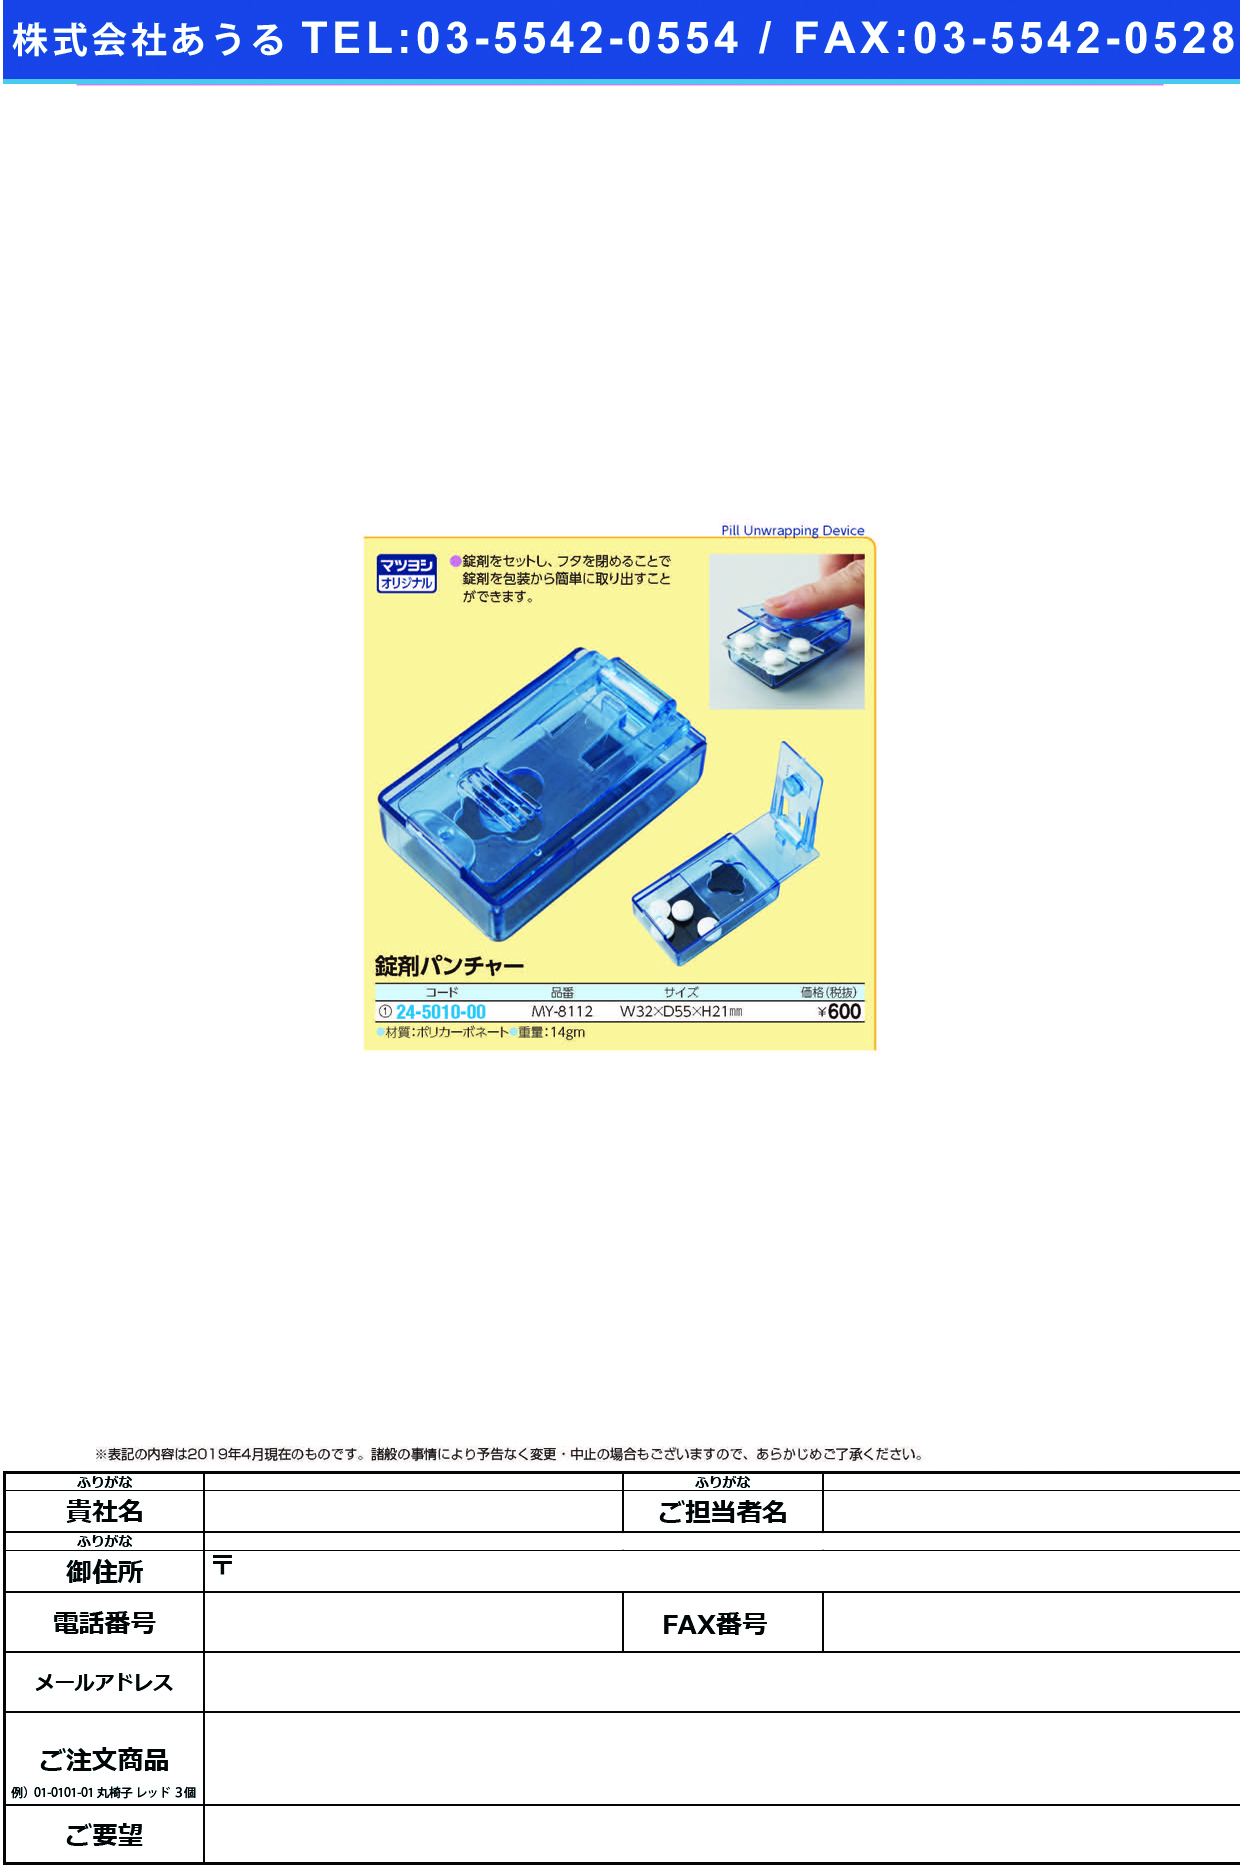 (24-5010-00)錠剤パンチャー MY-8112 ｼﾞｮｳｻﾞｲﾊﾟﾝﾁｬｰ【1個単位】【2019年カタログ商品】